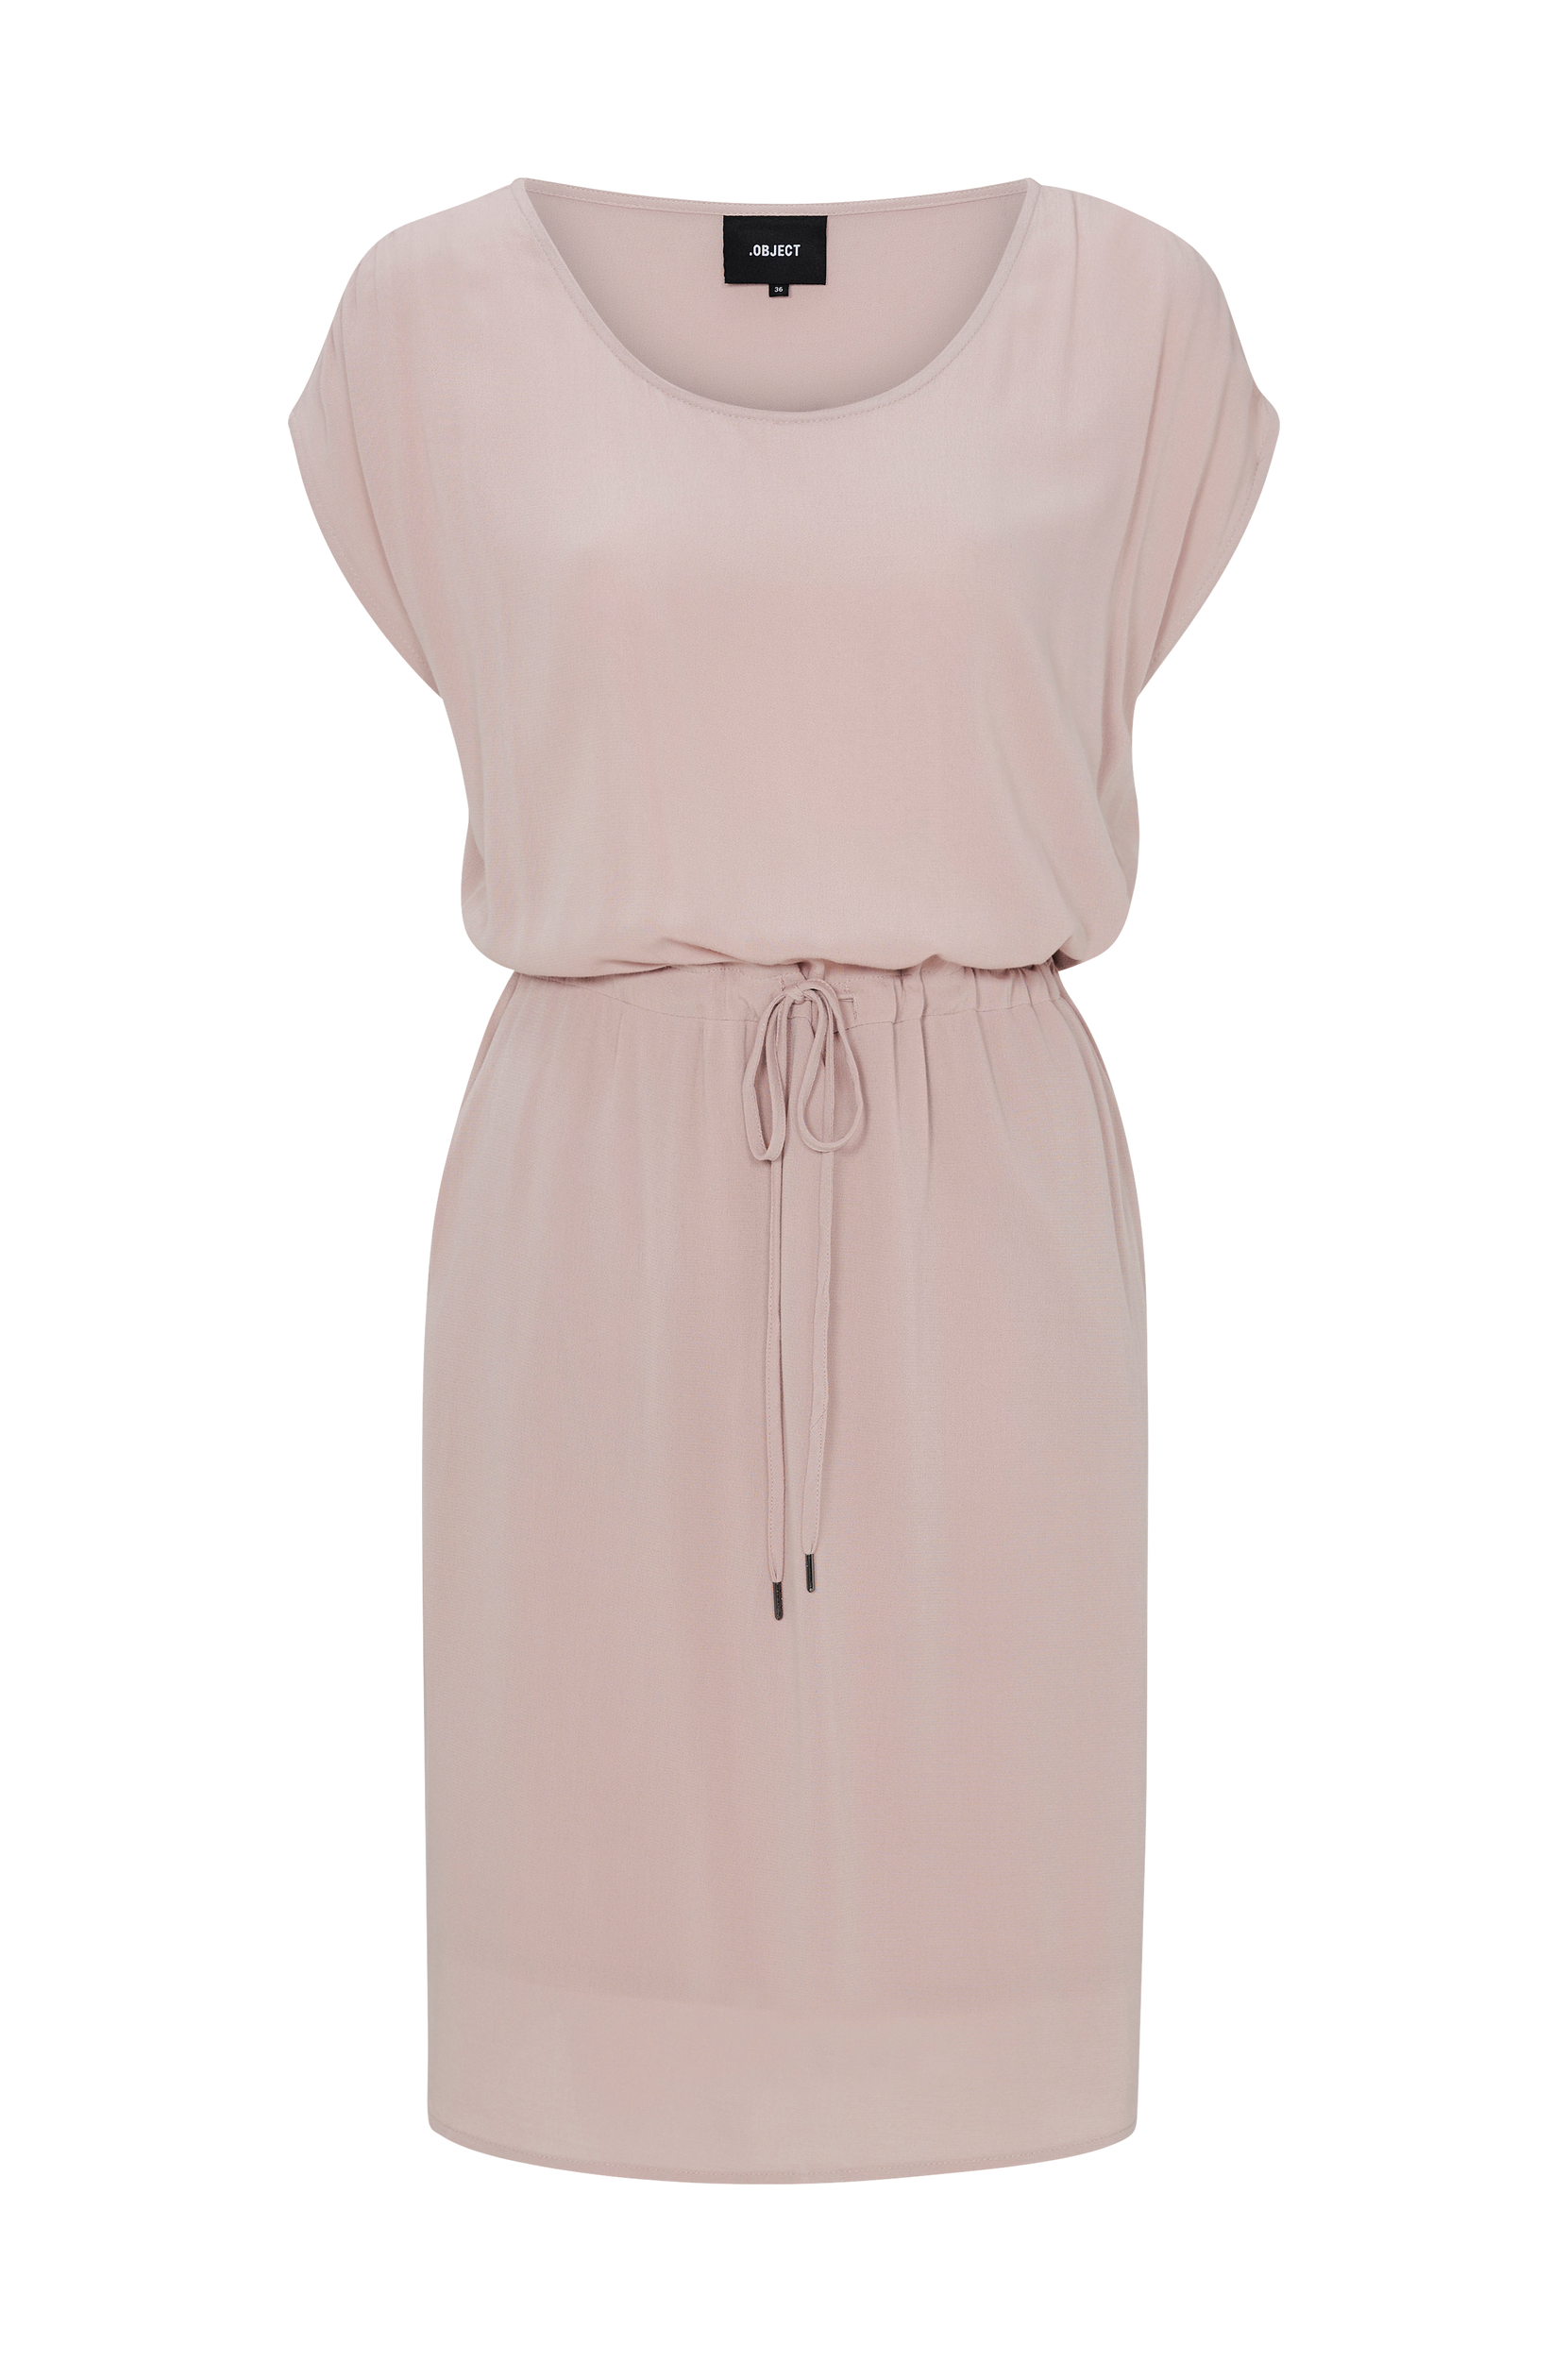 Mekko objBay Dallas S/S Dress, Object